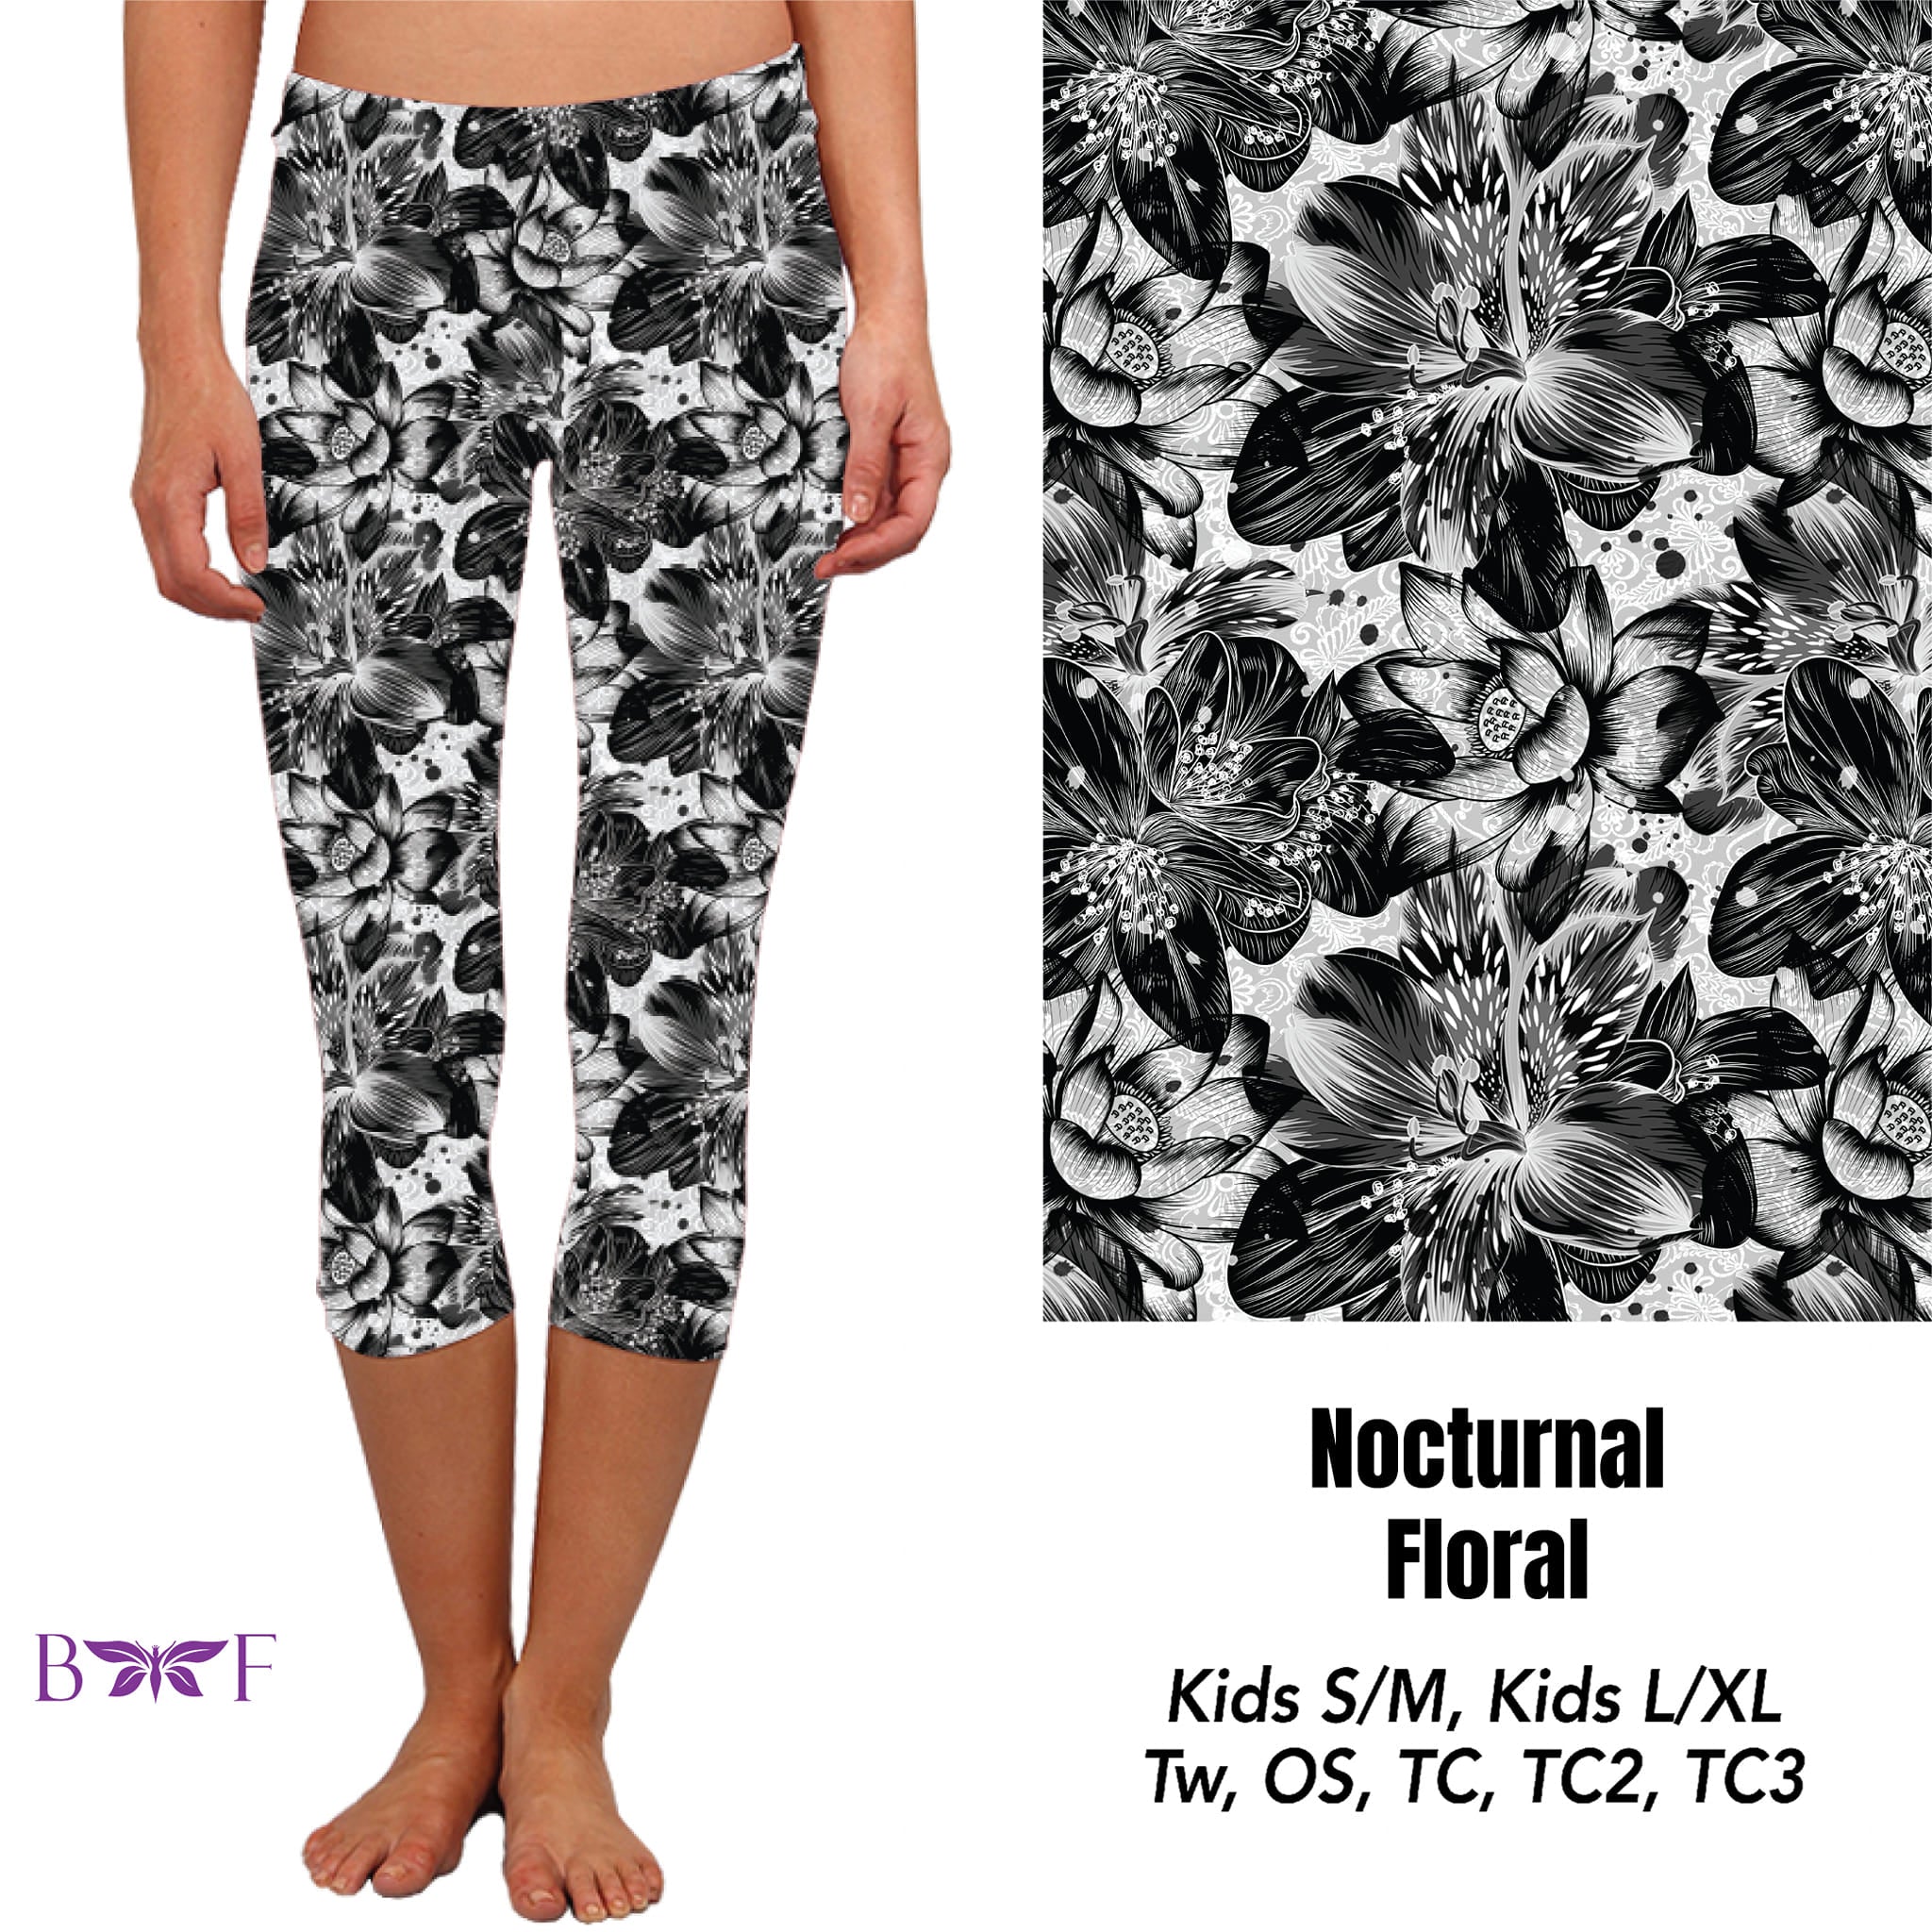 Nocturnal Floral Capris and Capri Lounge Pants